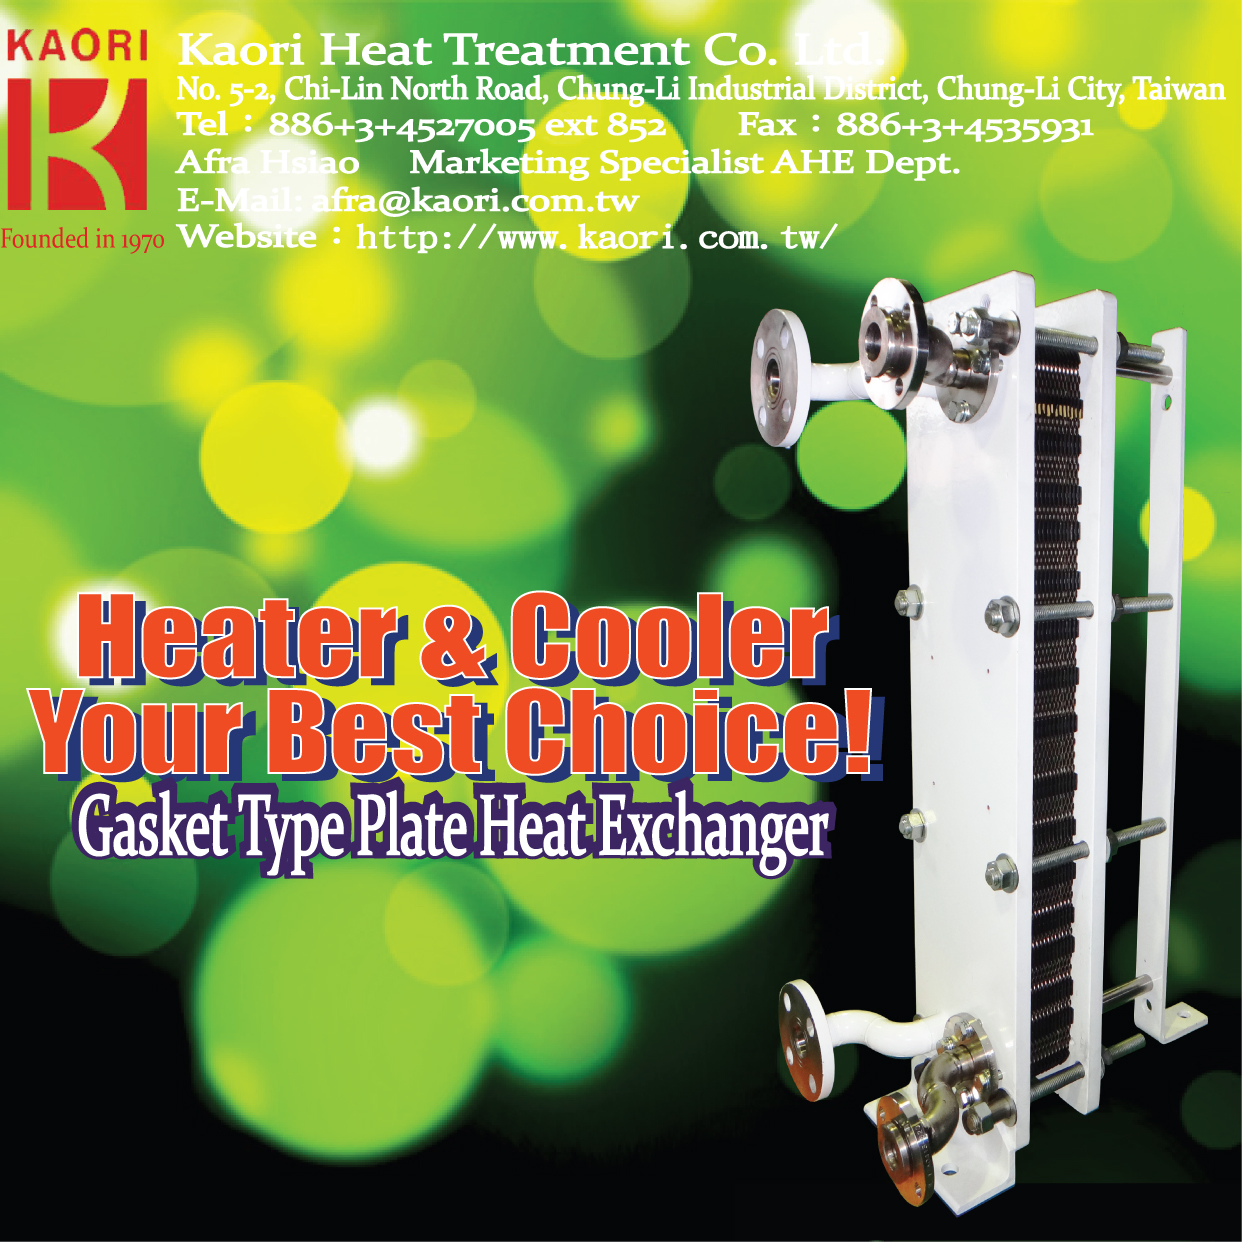 高力 冷凝器 - 板式熱交換器 - 降溫升溫最好的選擇!